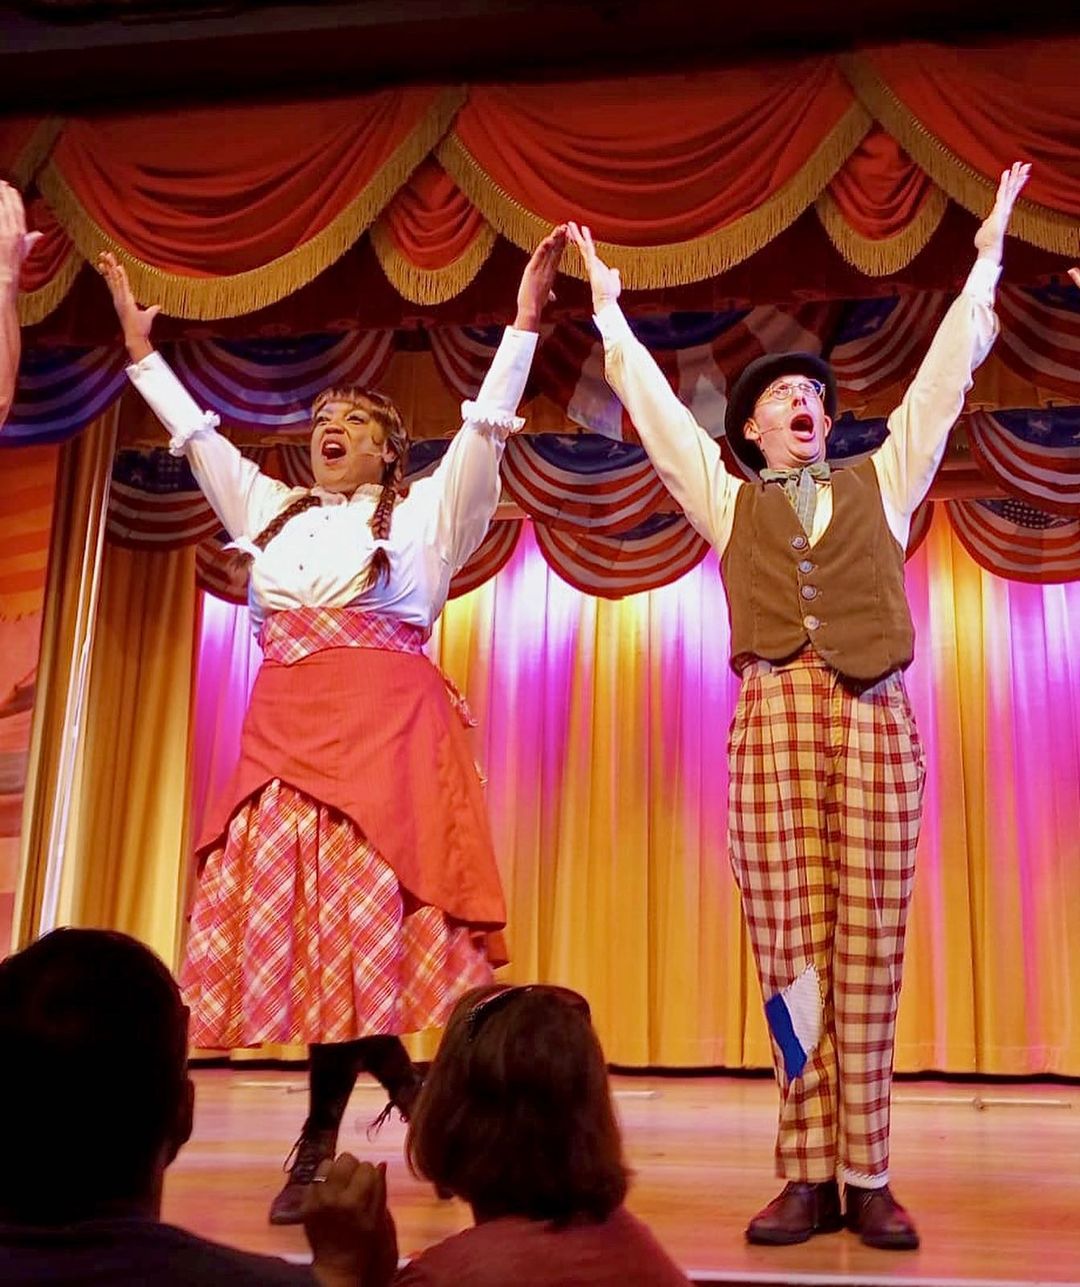 Hoop-Dee-Doo Musical Revue - Refeição e Show na Disney (Fort Wilderness)